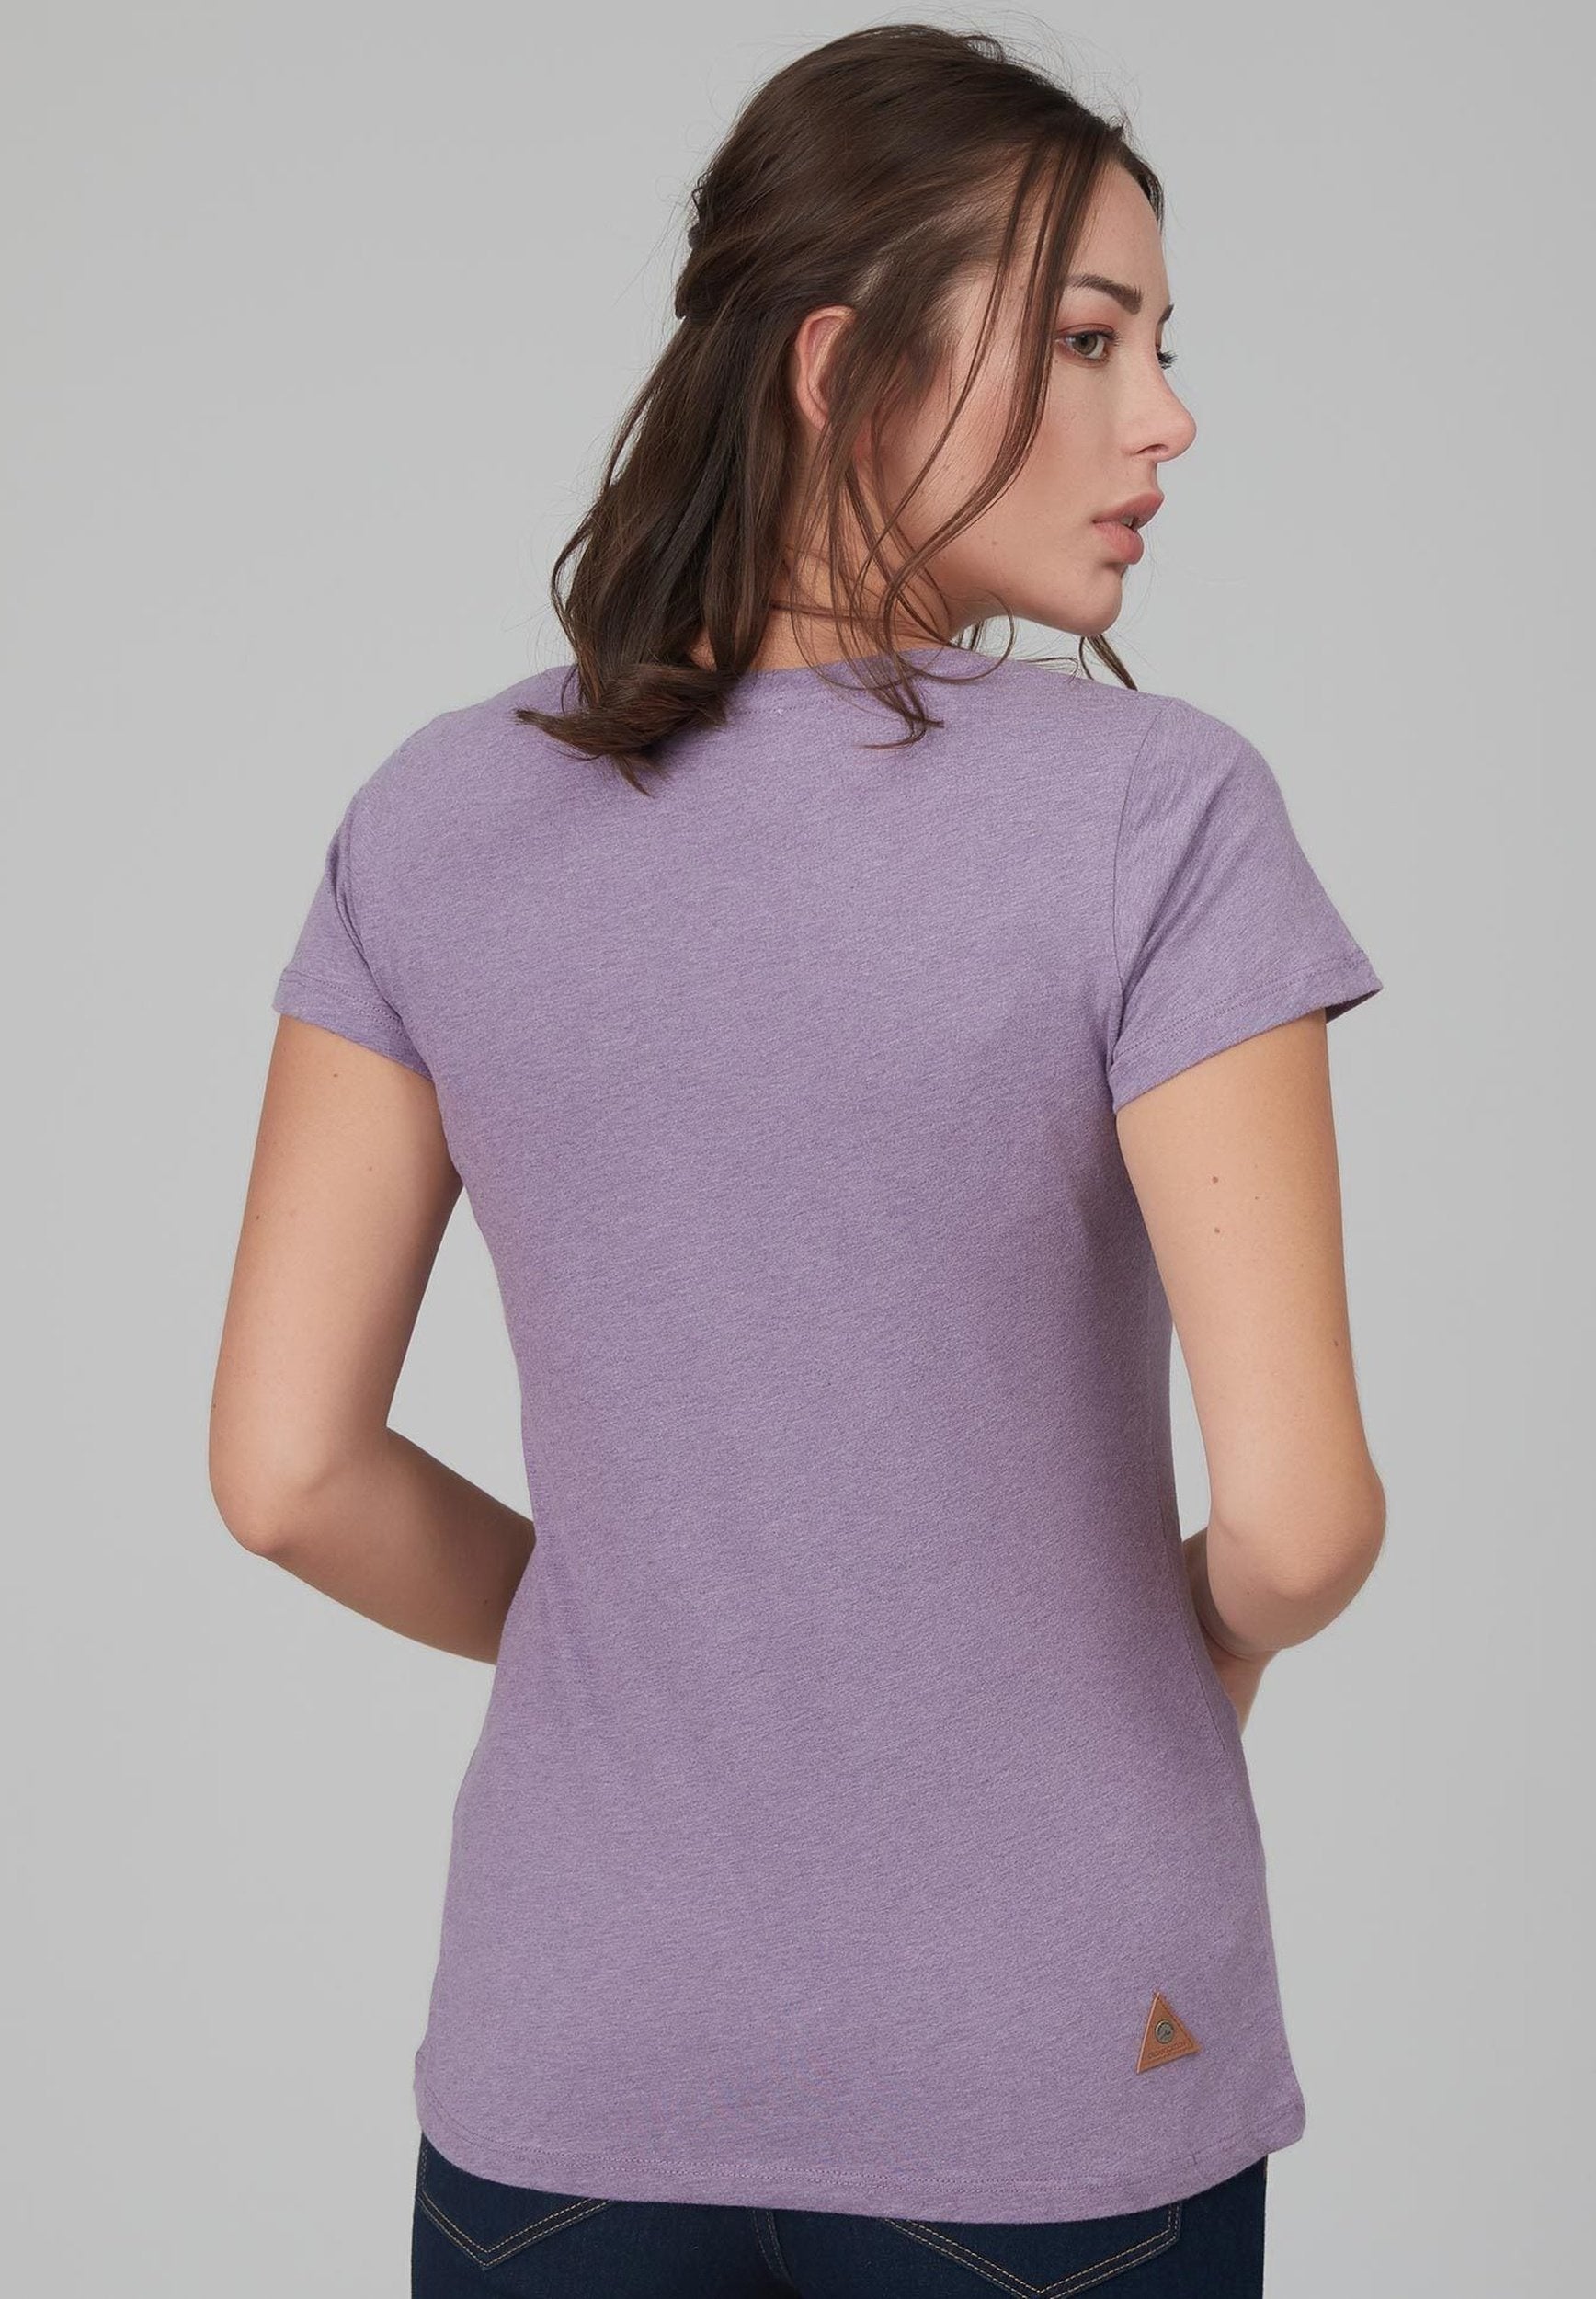 Damen T-Shirt aus Bio-Baumwolle mit Blumenprint WOR6006 Lilac Melange